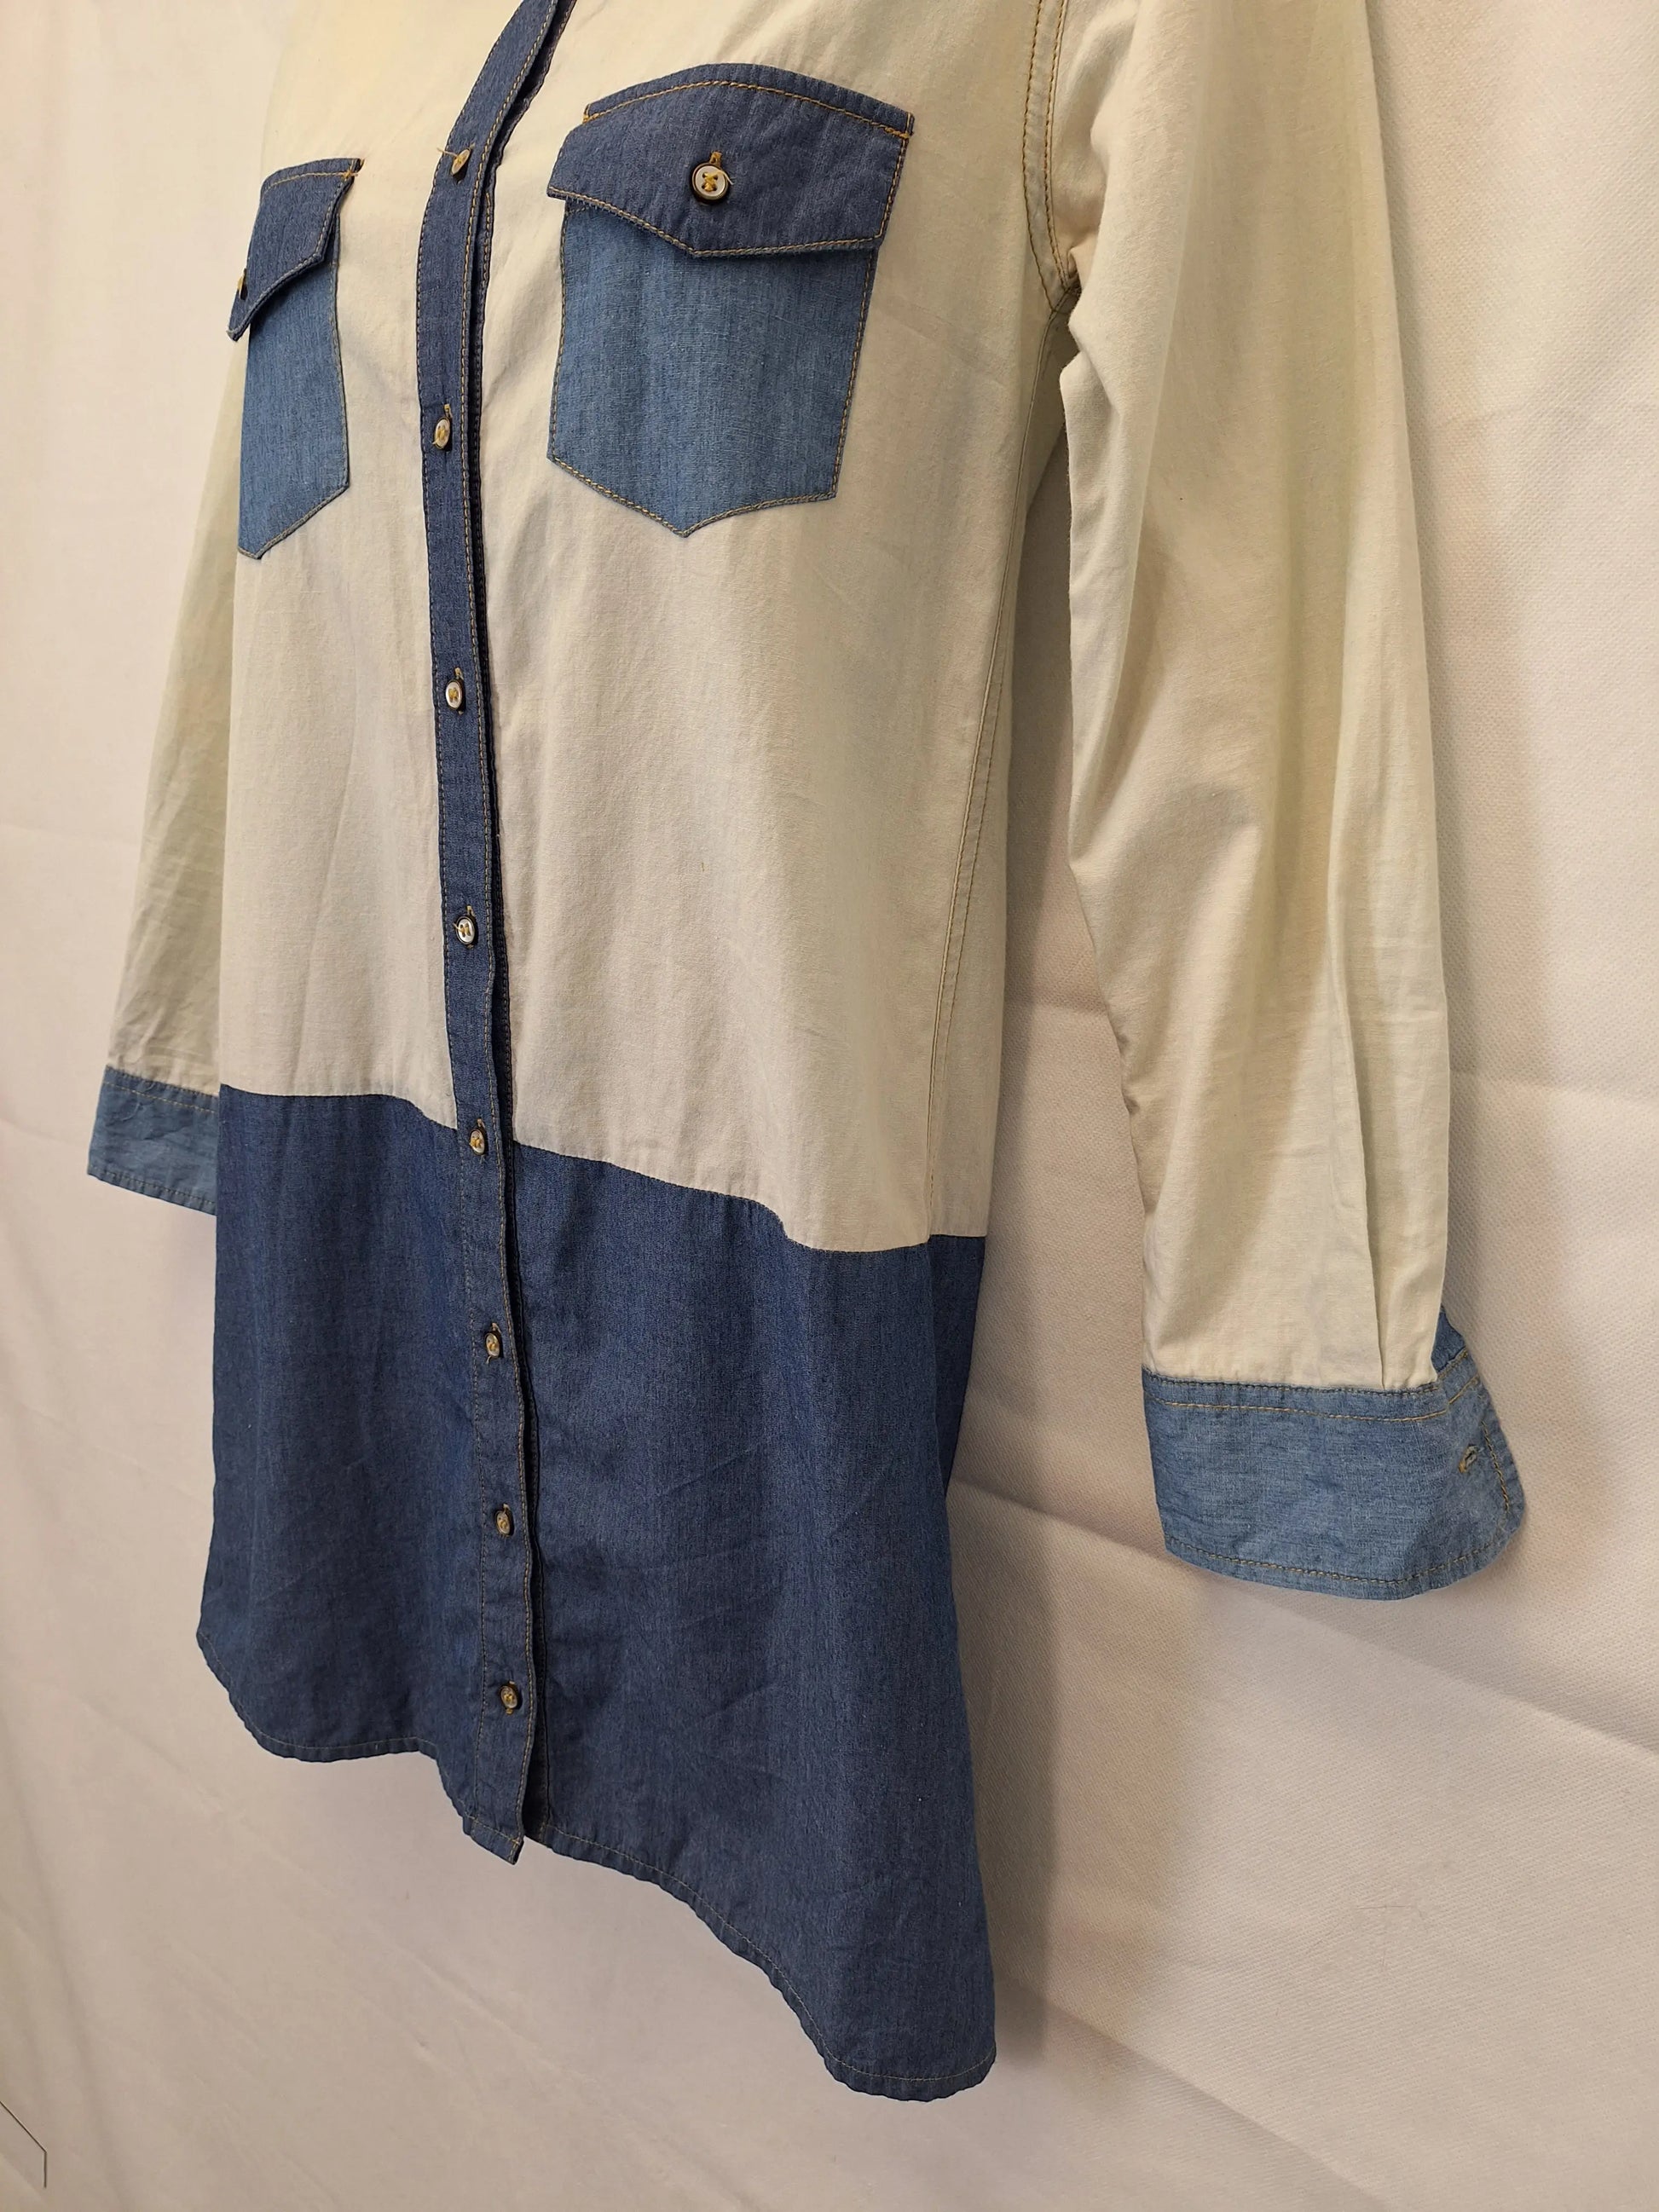 Gorman Half Denim Minii Dress Size 6 by SwapUp-Online Second Hand Store-Online Thrift Store